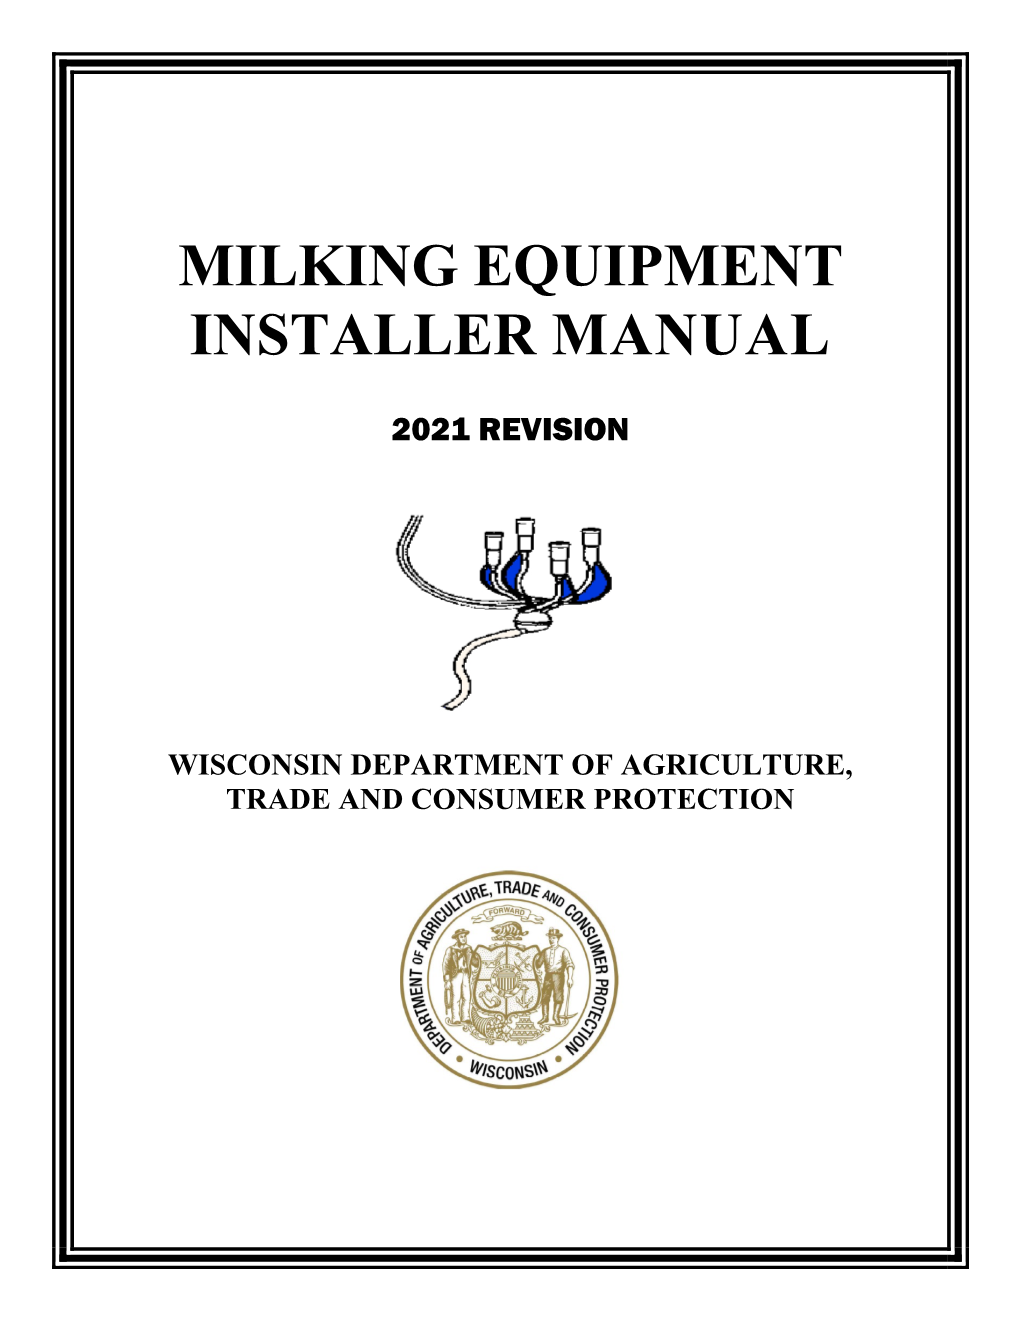 Milking Equipment Installer Manual